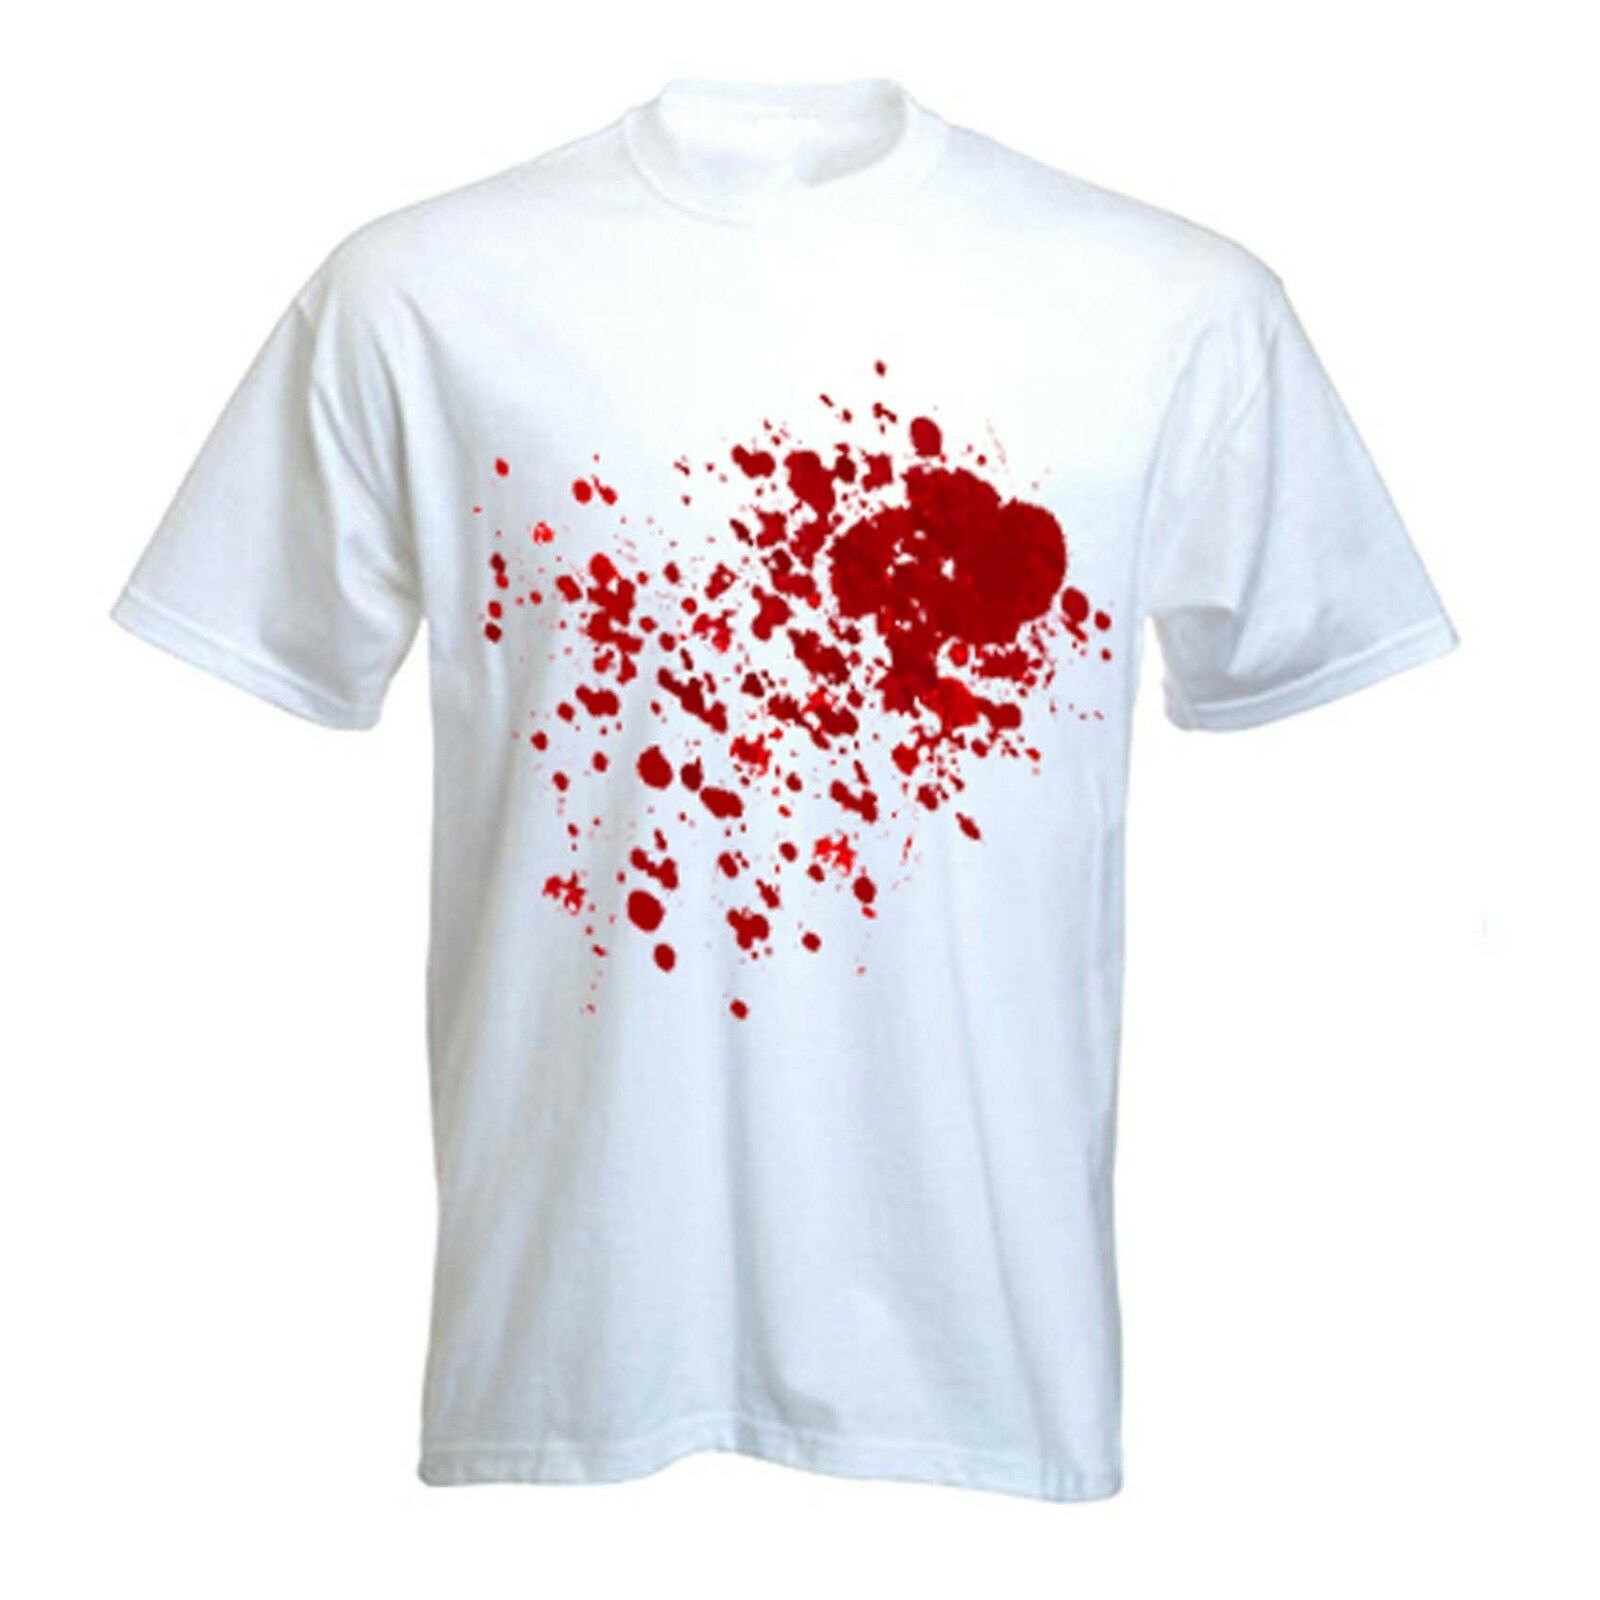 футболка вся в крови